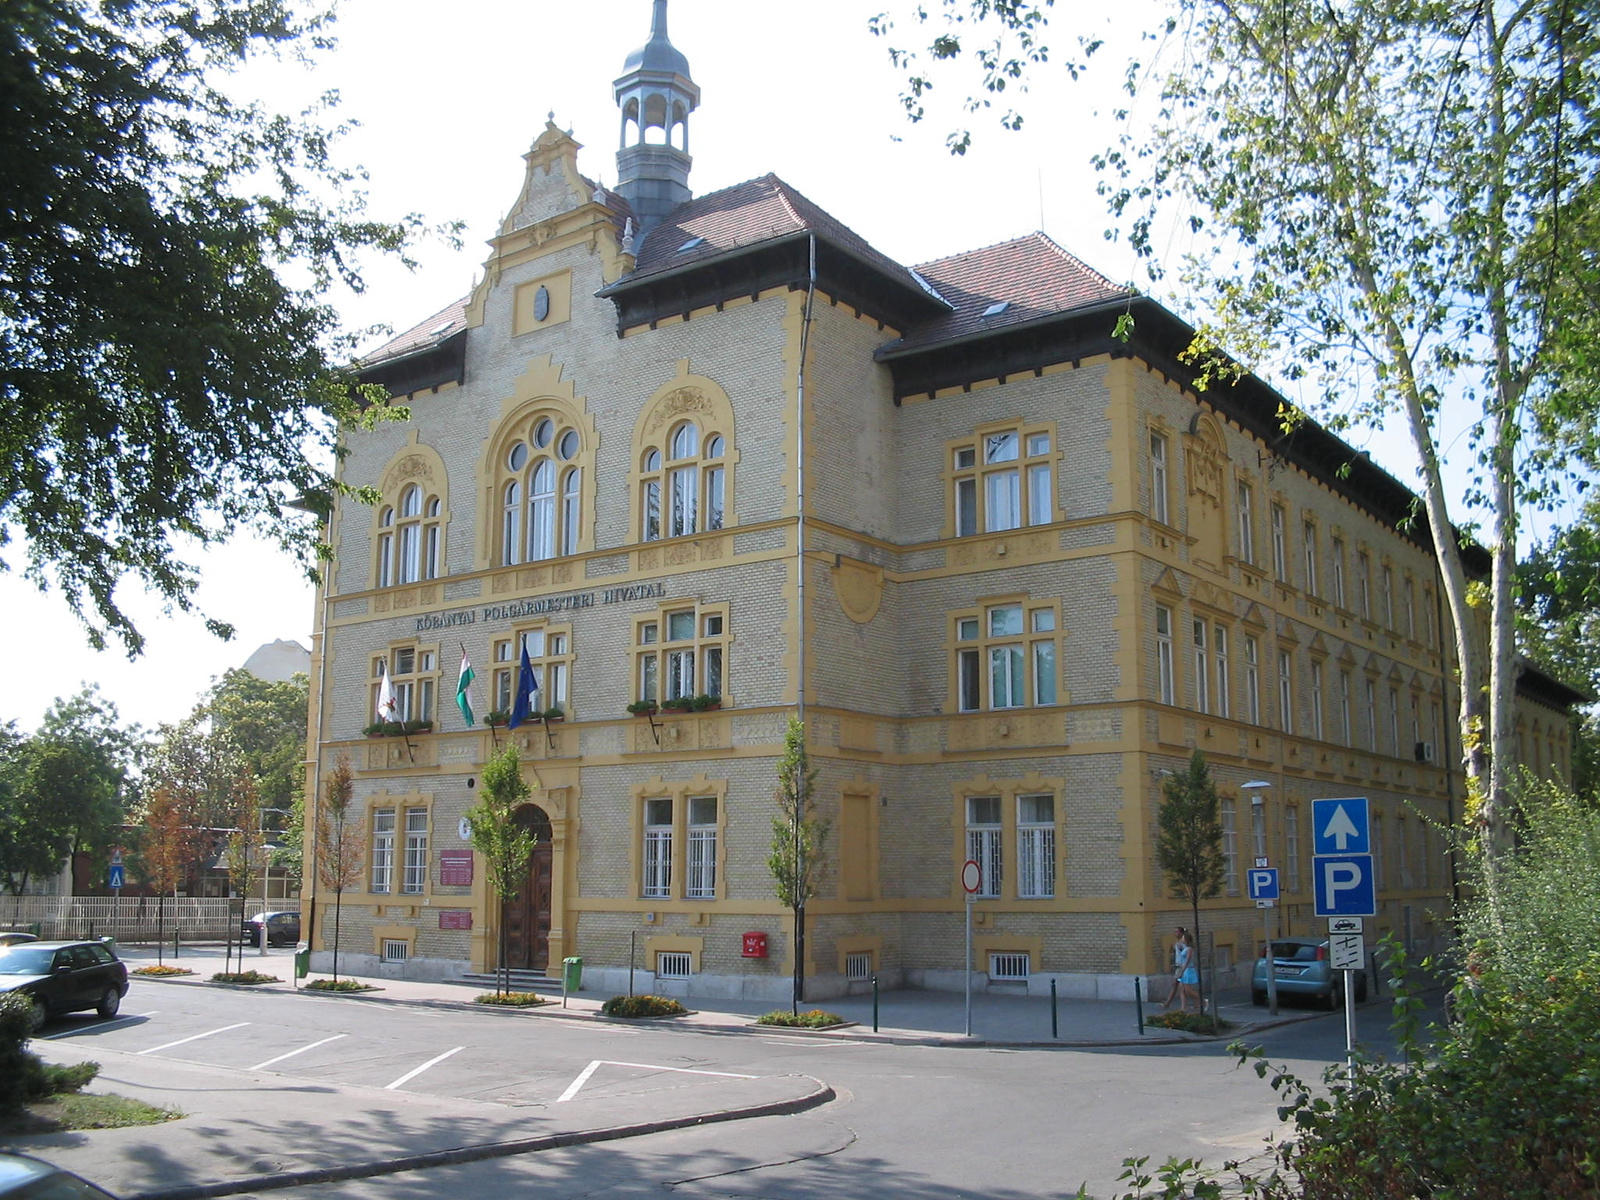 Budapest Kőbányai Polgármesteri Hivatal